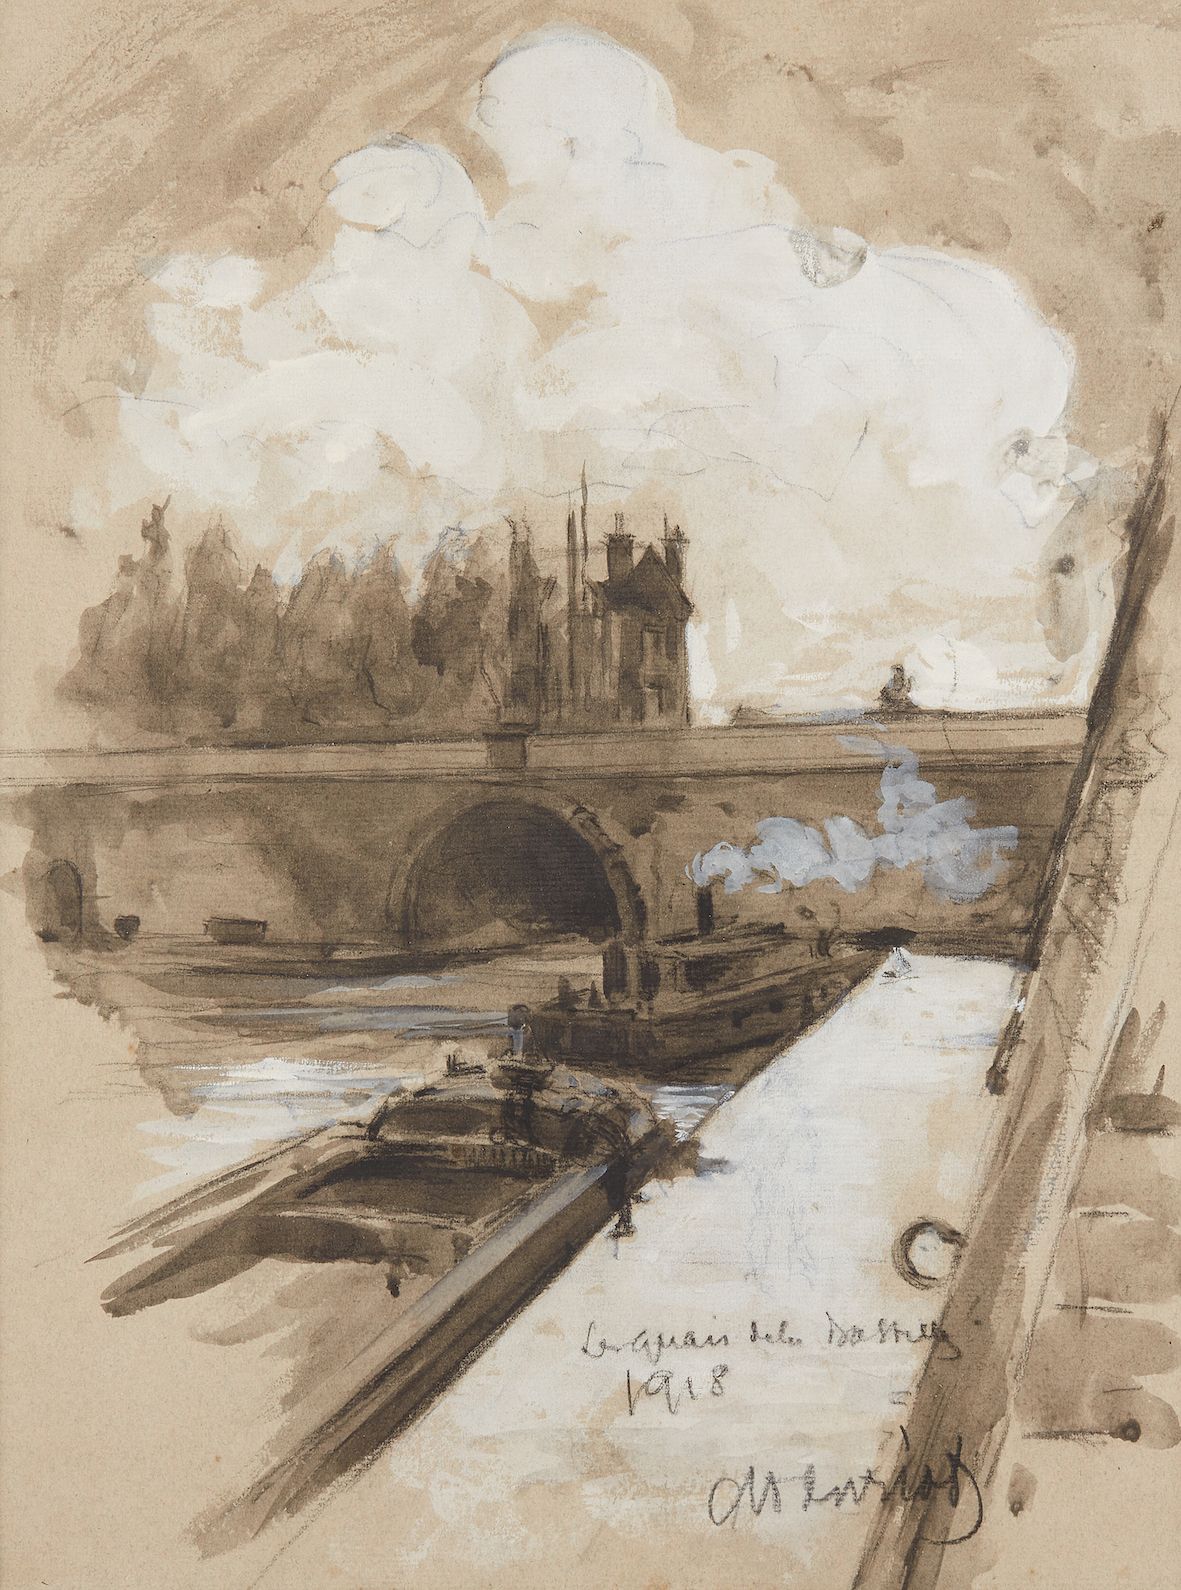 Null M HENRIOD（第二十次）。

巴黎的圣马丁运河，1918年

纸上黑石、水墨和水粉画

右下角有签名，位置和日期

37,5 x 27,5 cm